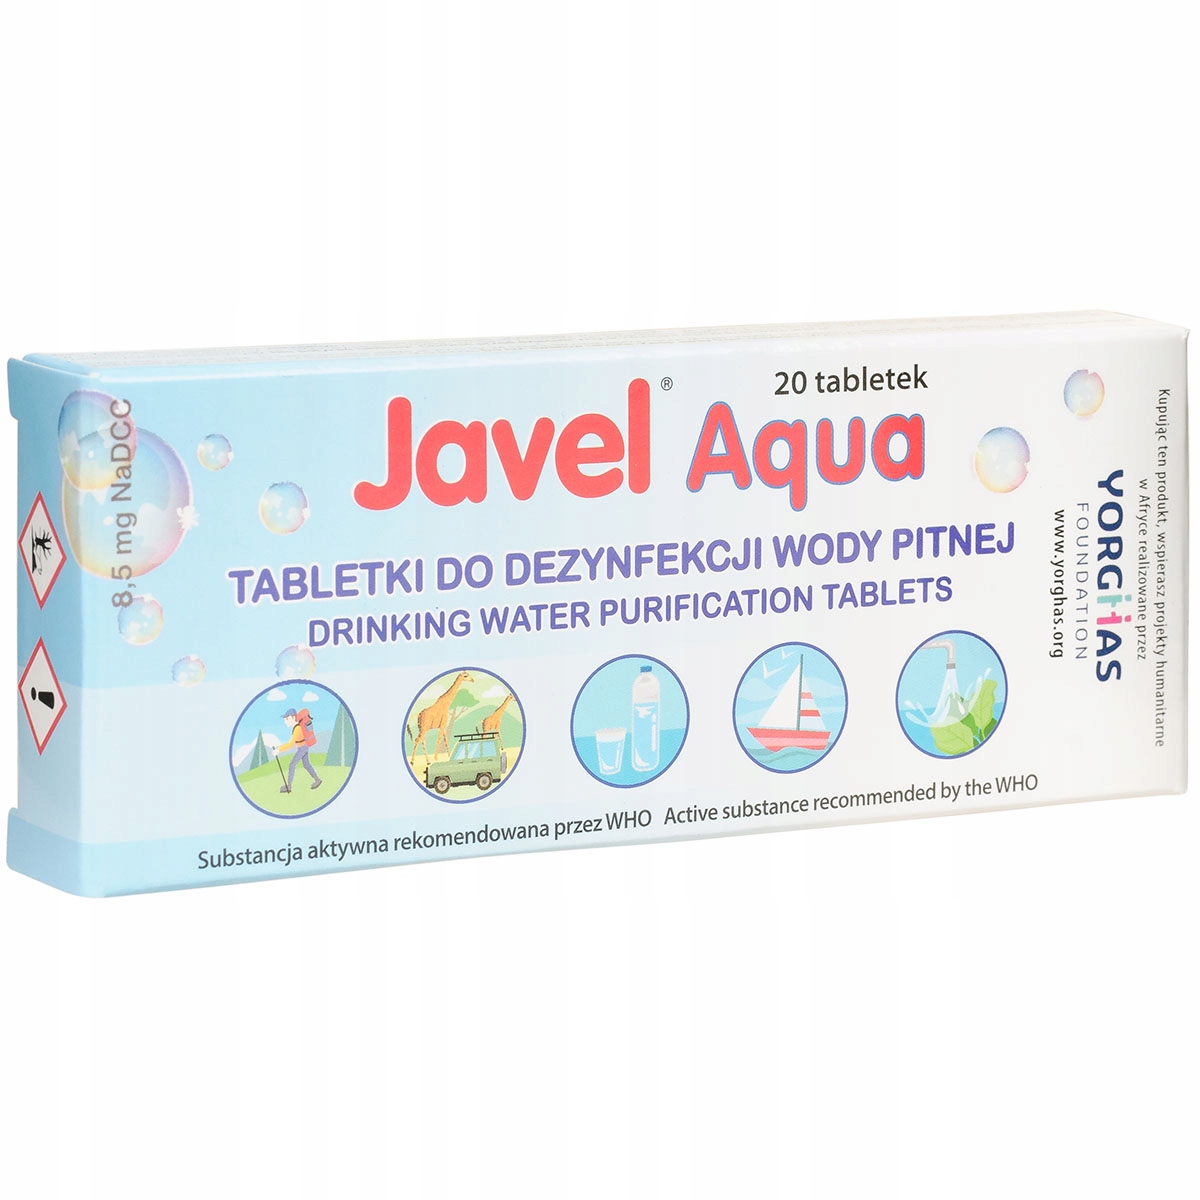 Таблетки для дезинфекции воды JAVEL AQUA